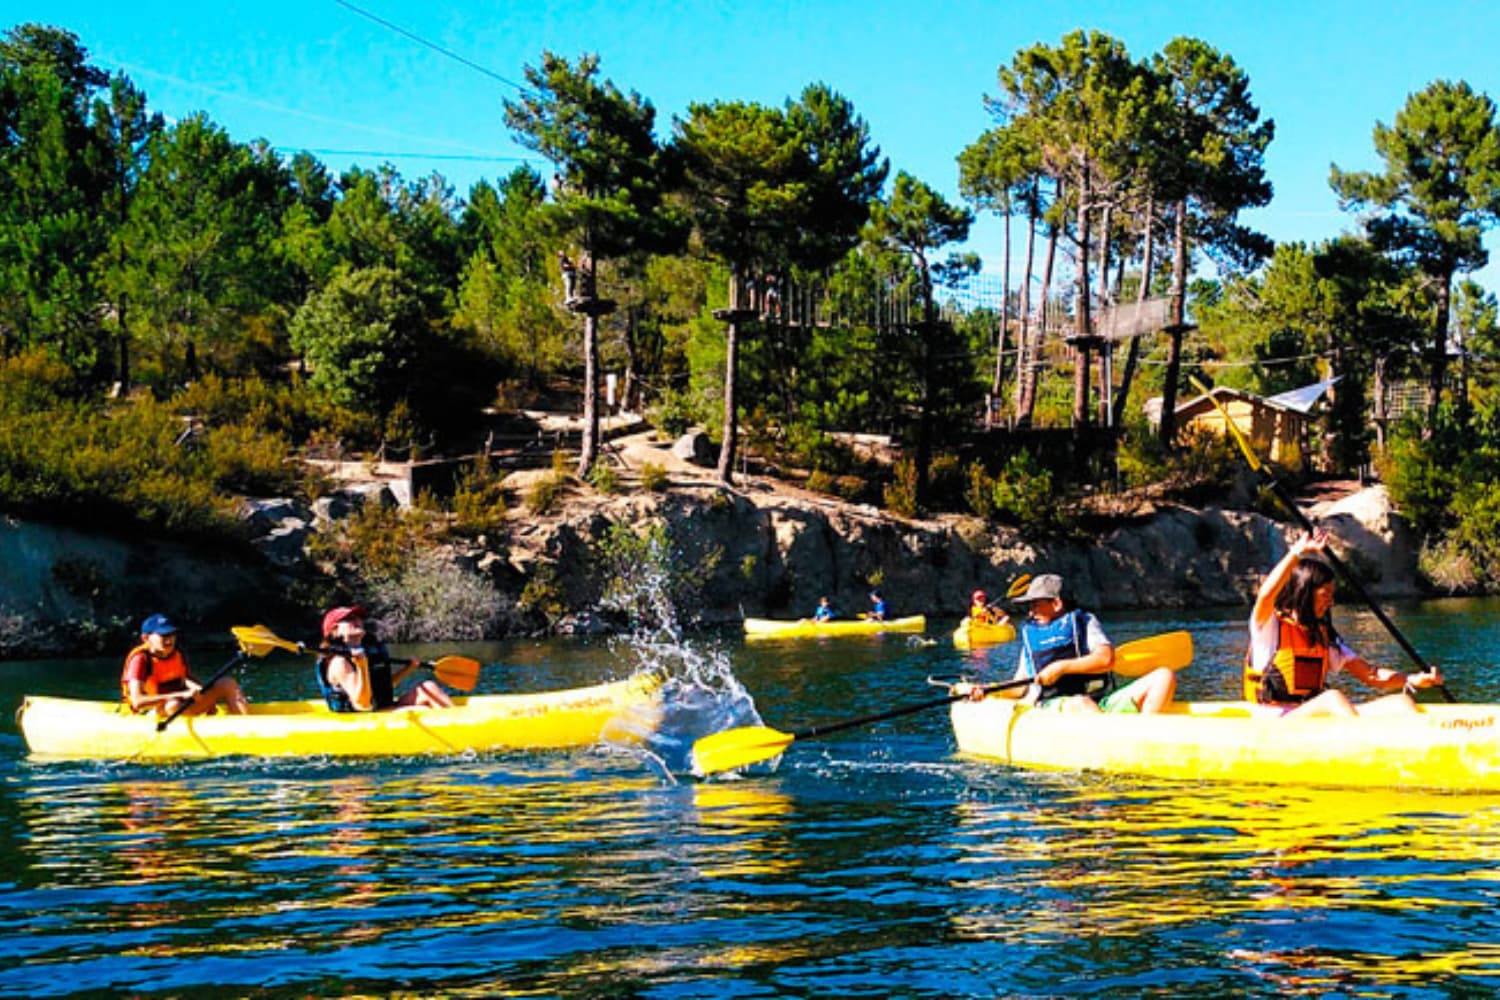 Water activities in the Sierra de Madrid